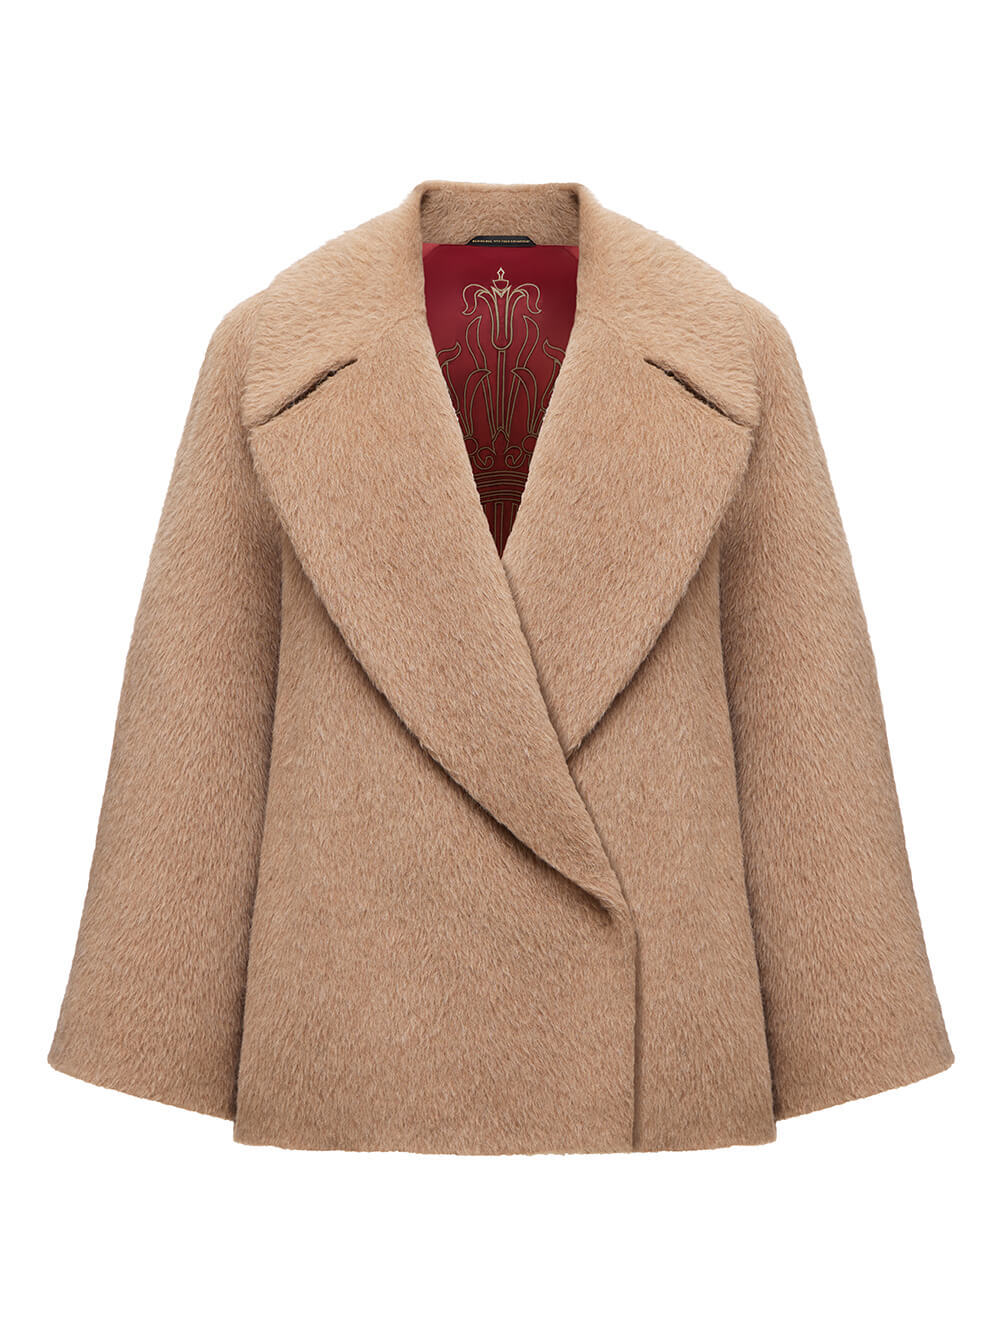 Купить полупальто женское | Короткое пальто в интернет магазине garant-artem.ru